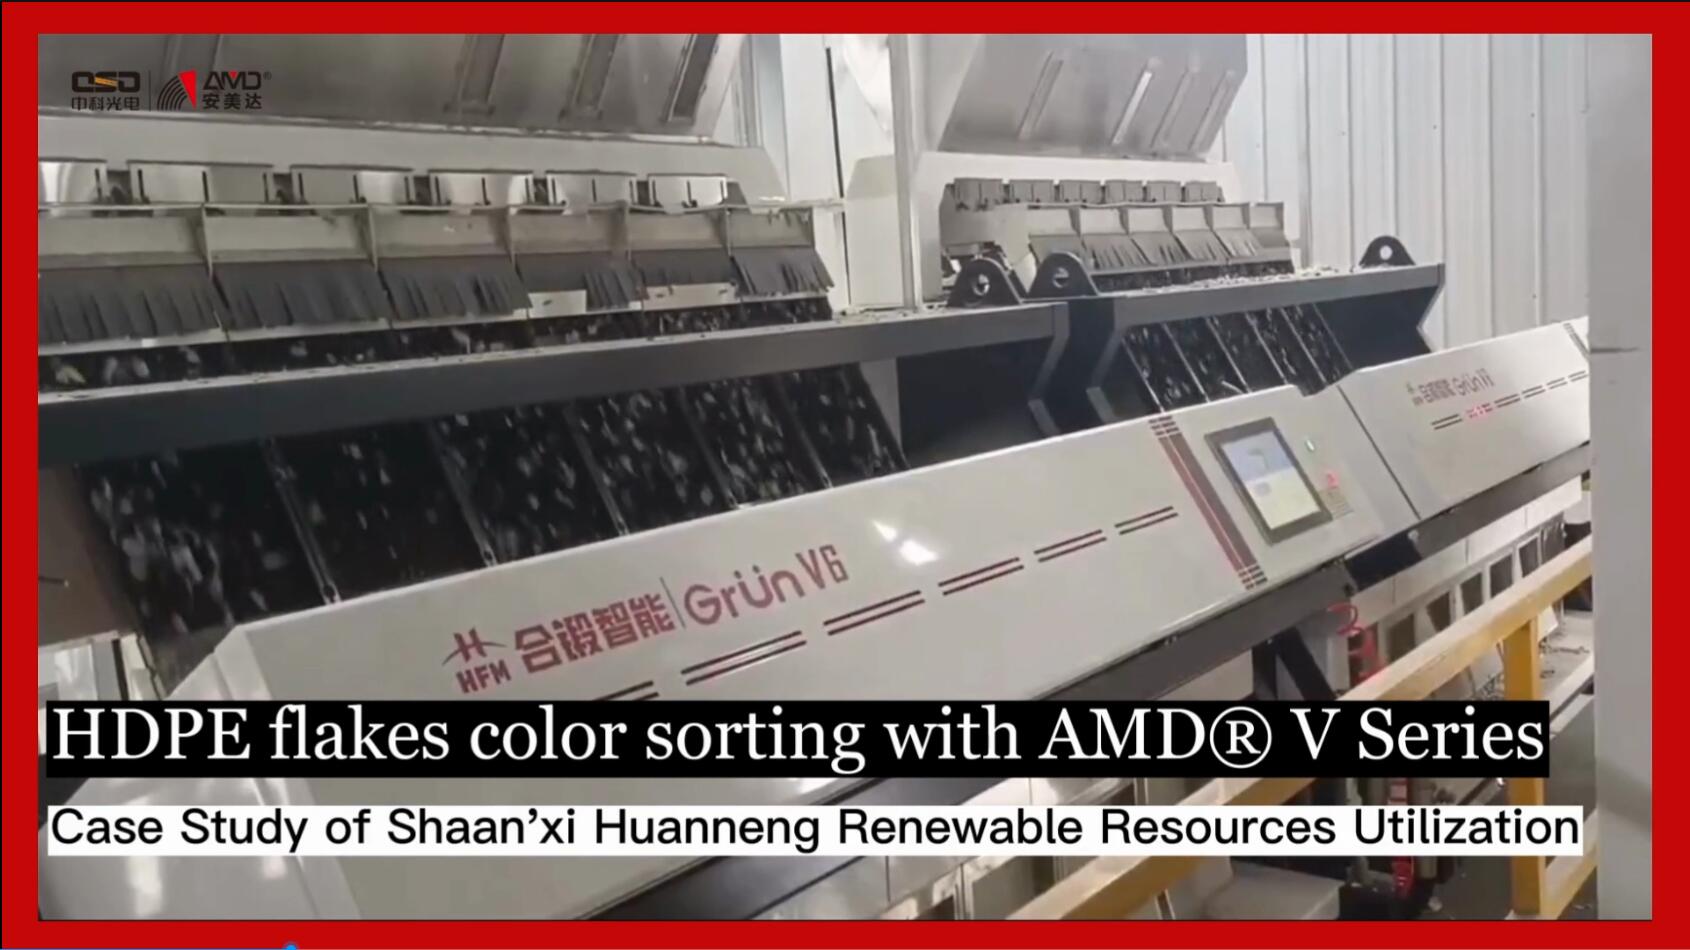 Selezione del colore dei fiocchi di HDPE con il separatore AMD® serie V
